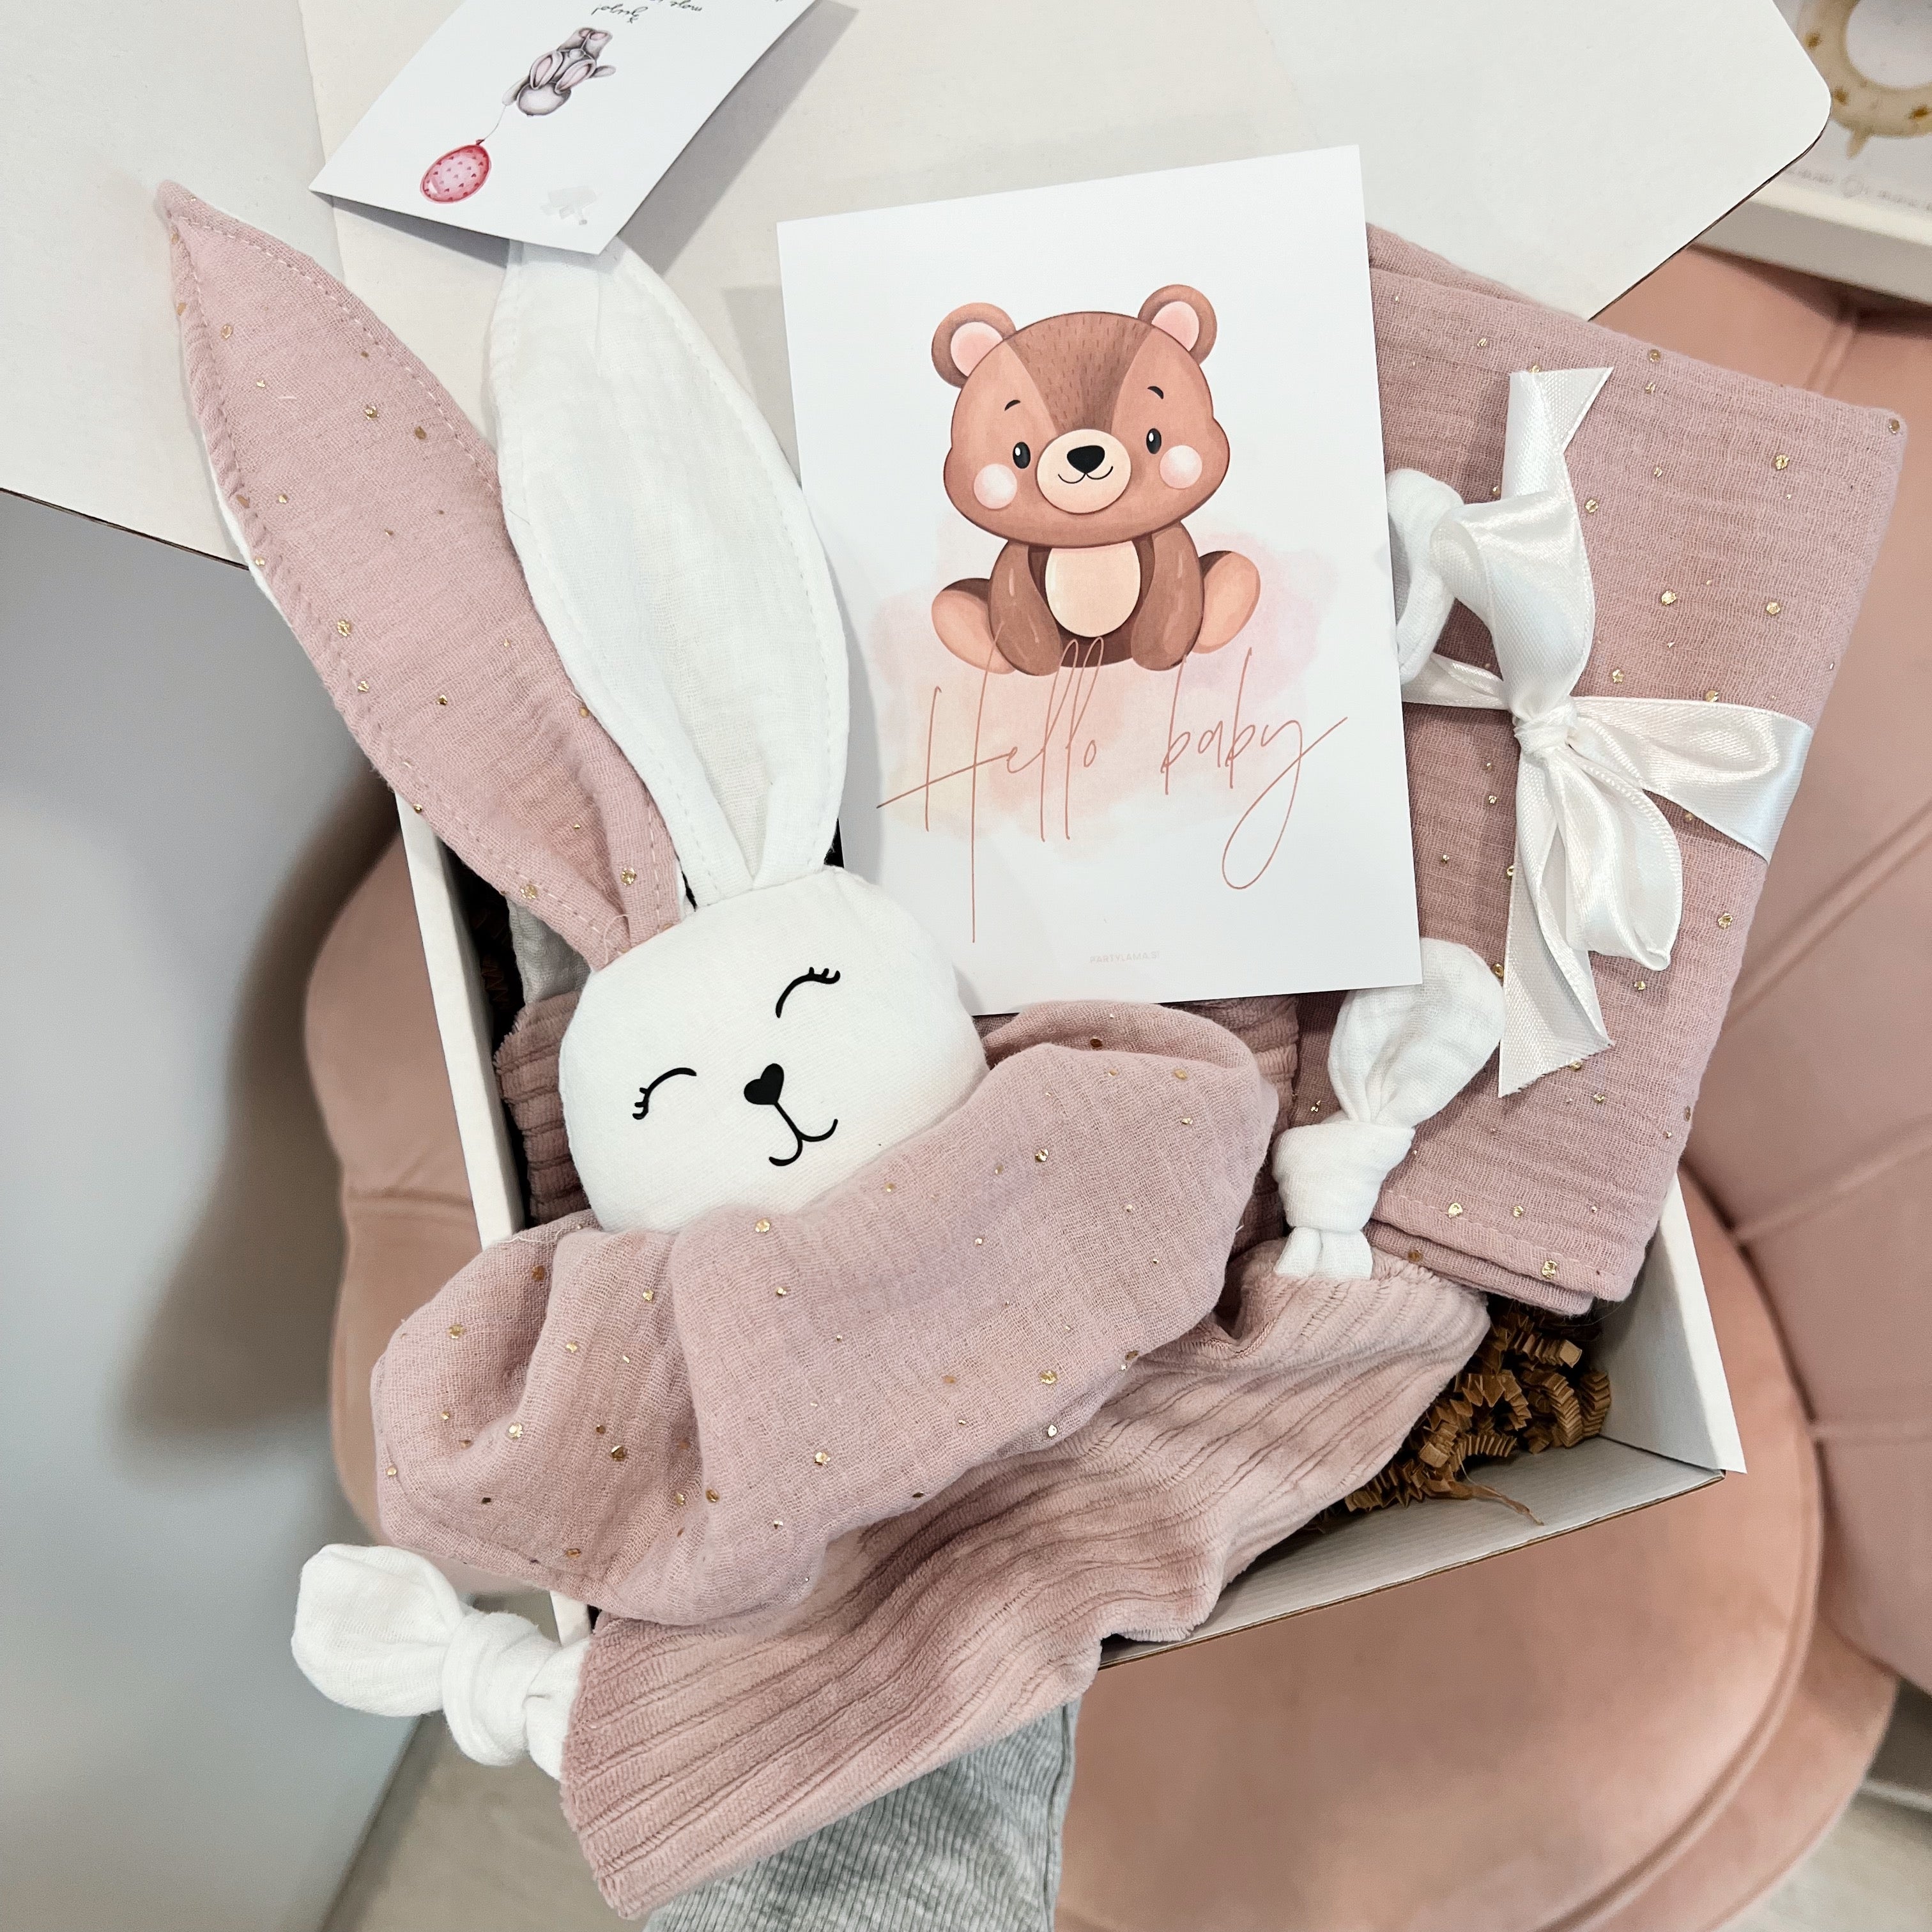 Poklon paket - Hello baby, light pink